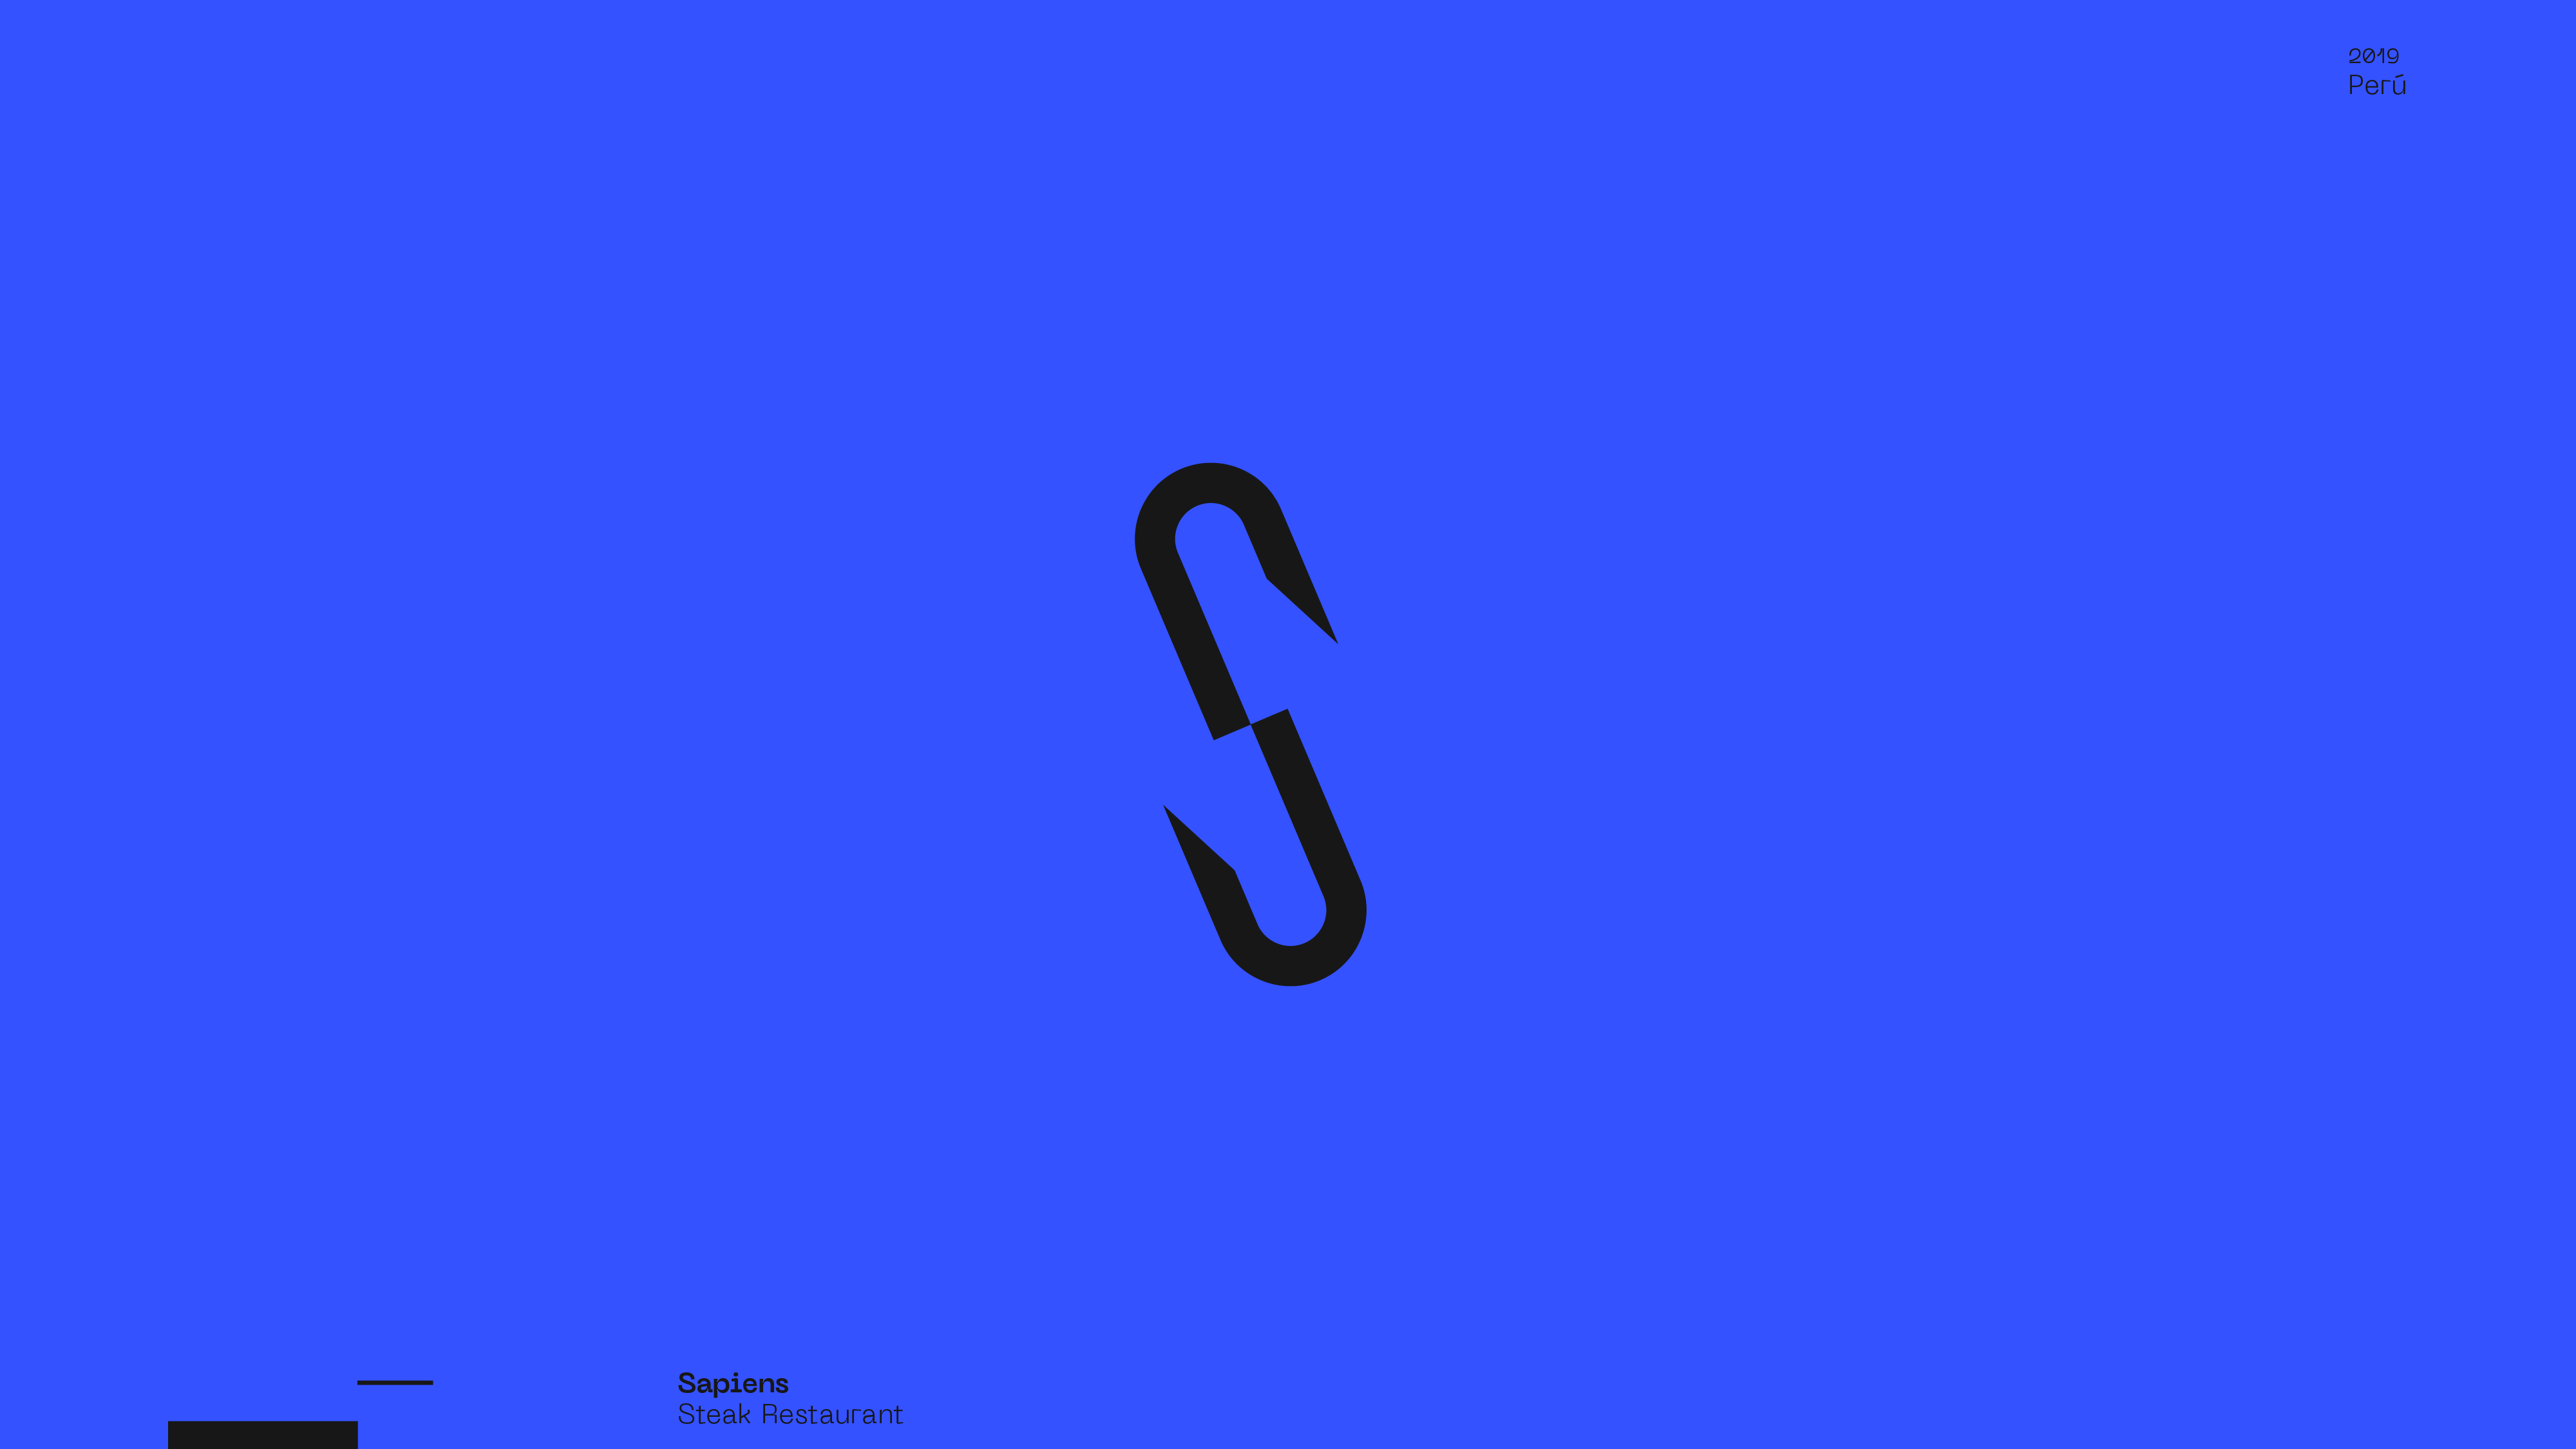 Guapo Design Studio by Esteban Ibarra Logofolio 2019 logo designer — Sapiens